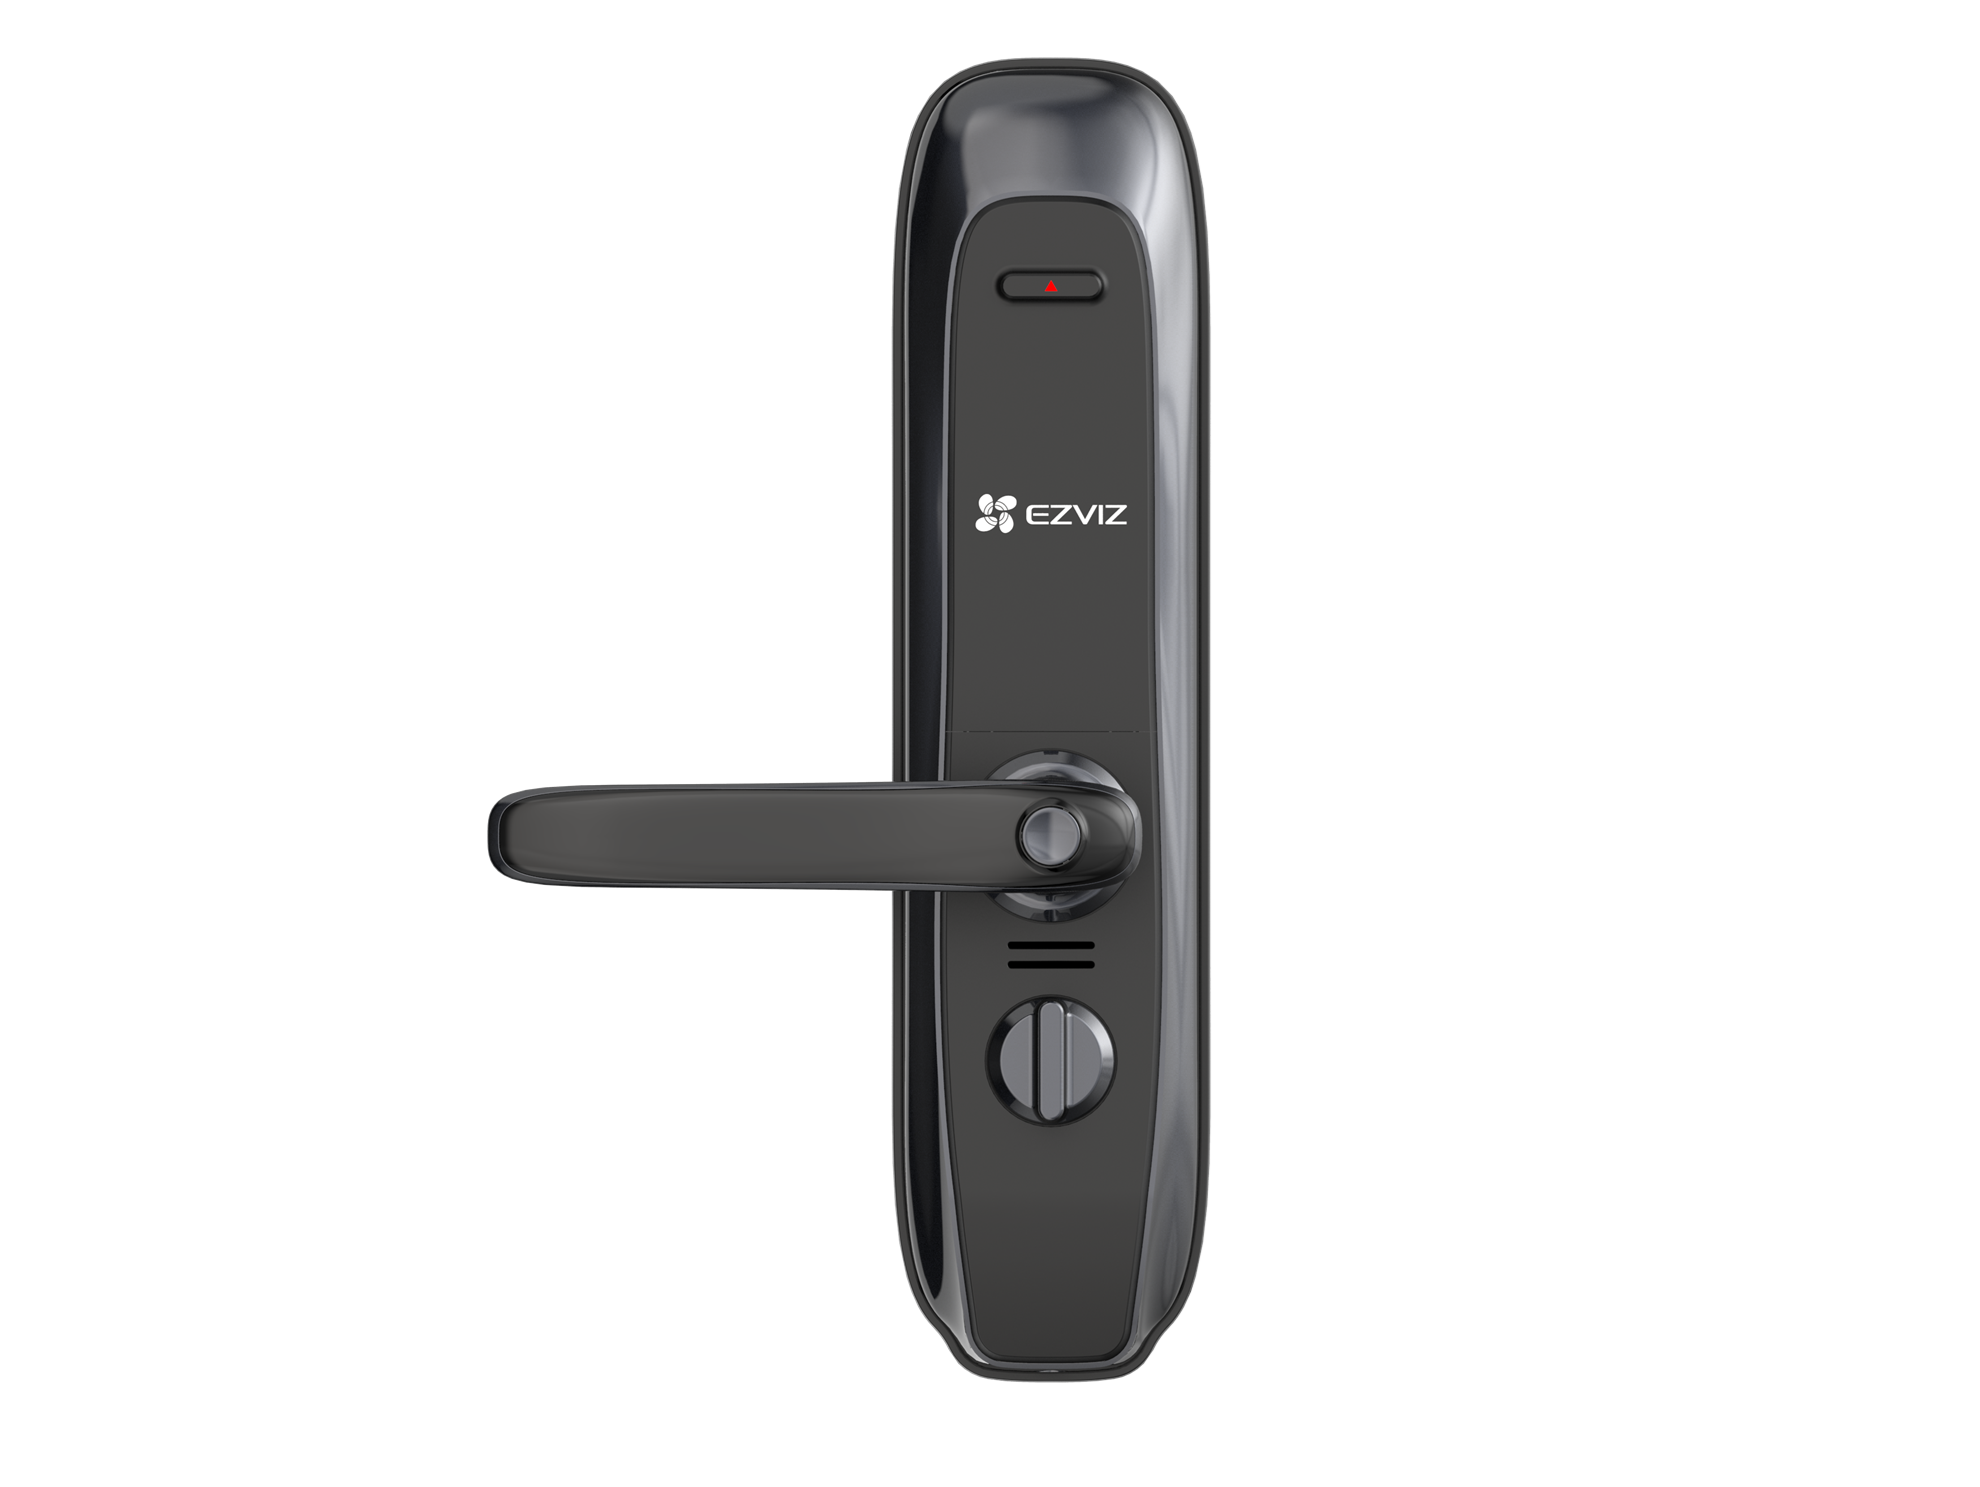 EZVIZ Smart Fingerprint Door Lock with Real-Time Mobile Alerts.